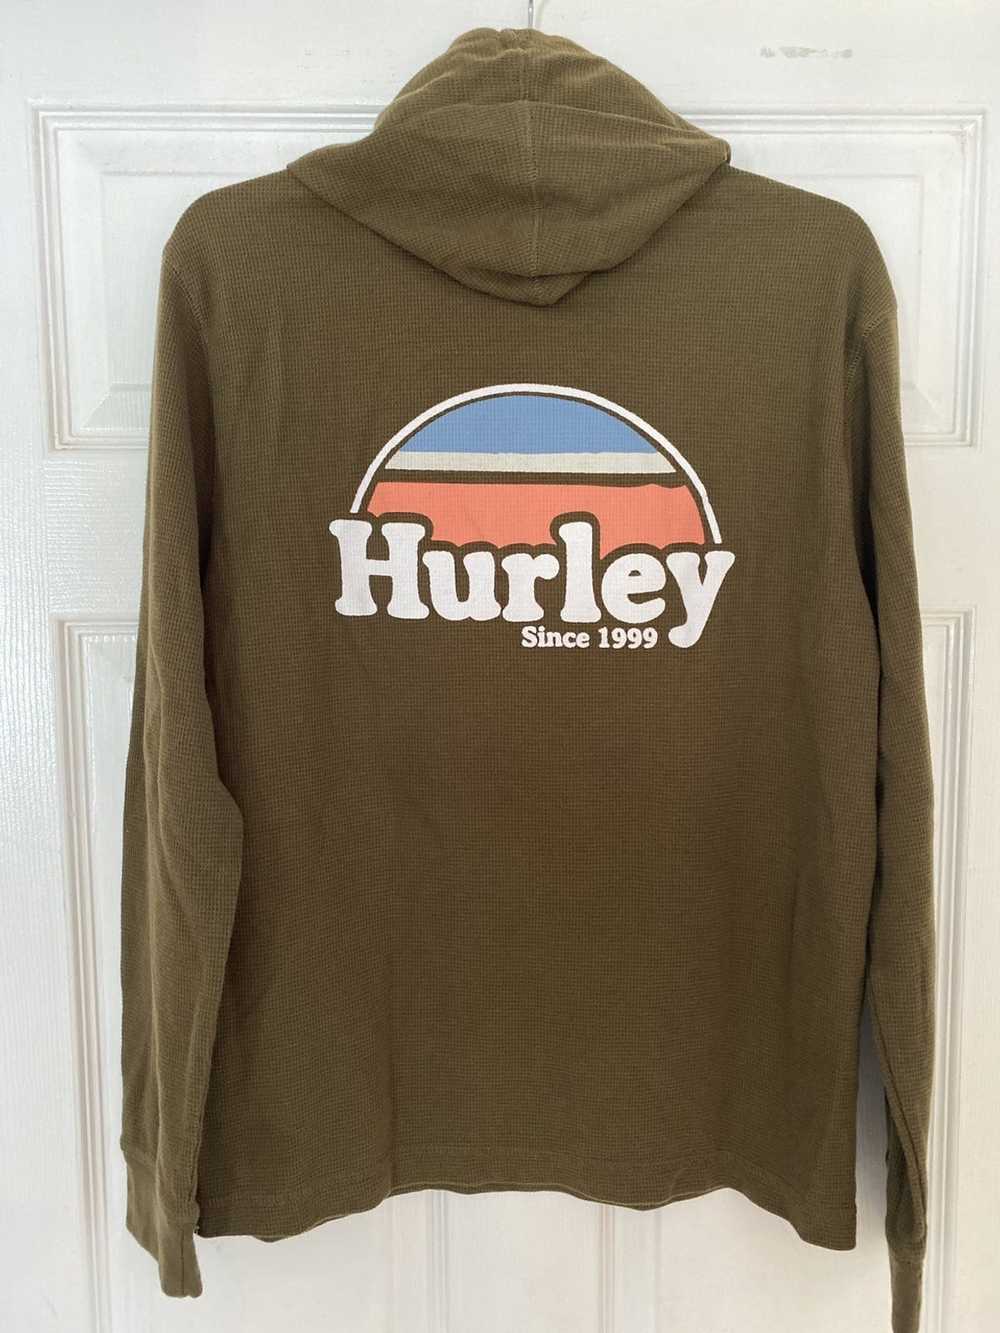 Hurley Hurley since 1999 sweatshirt hoodie - image 3